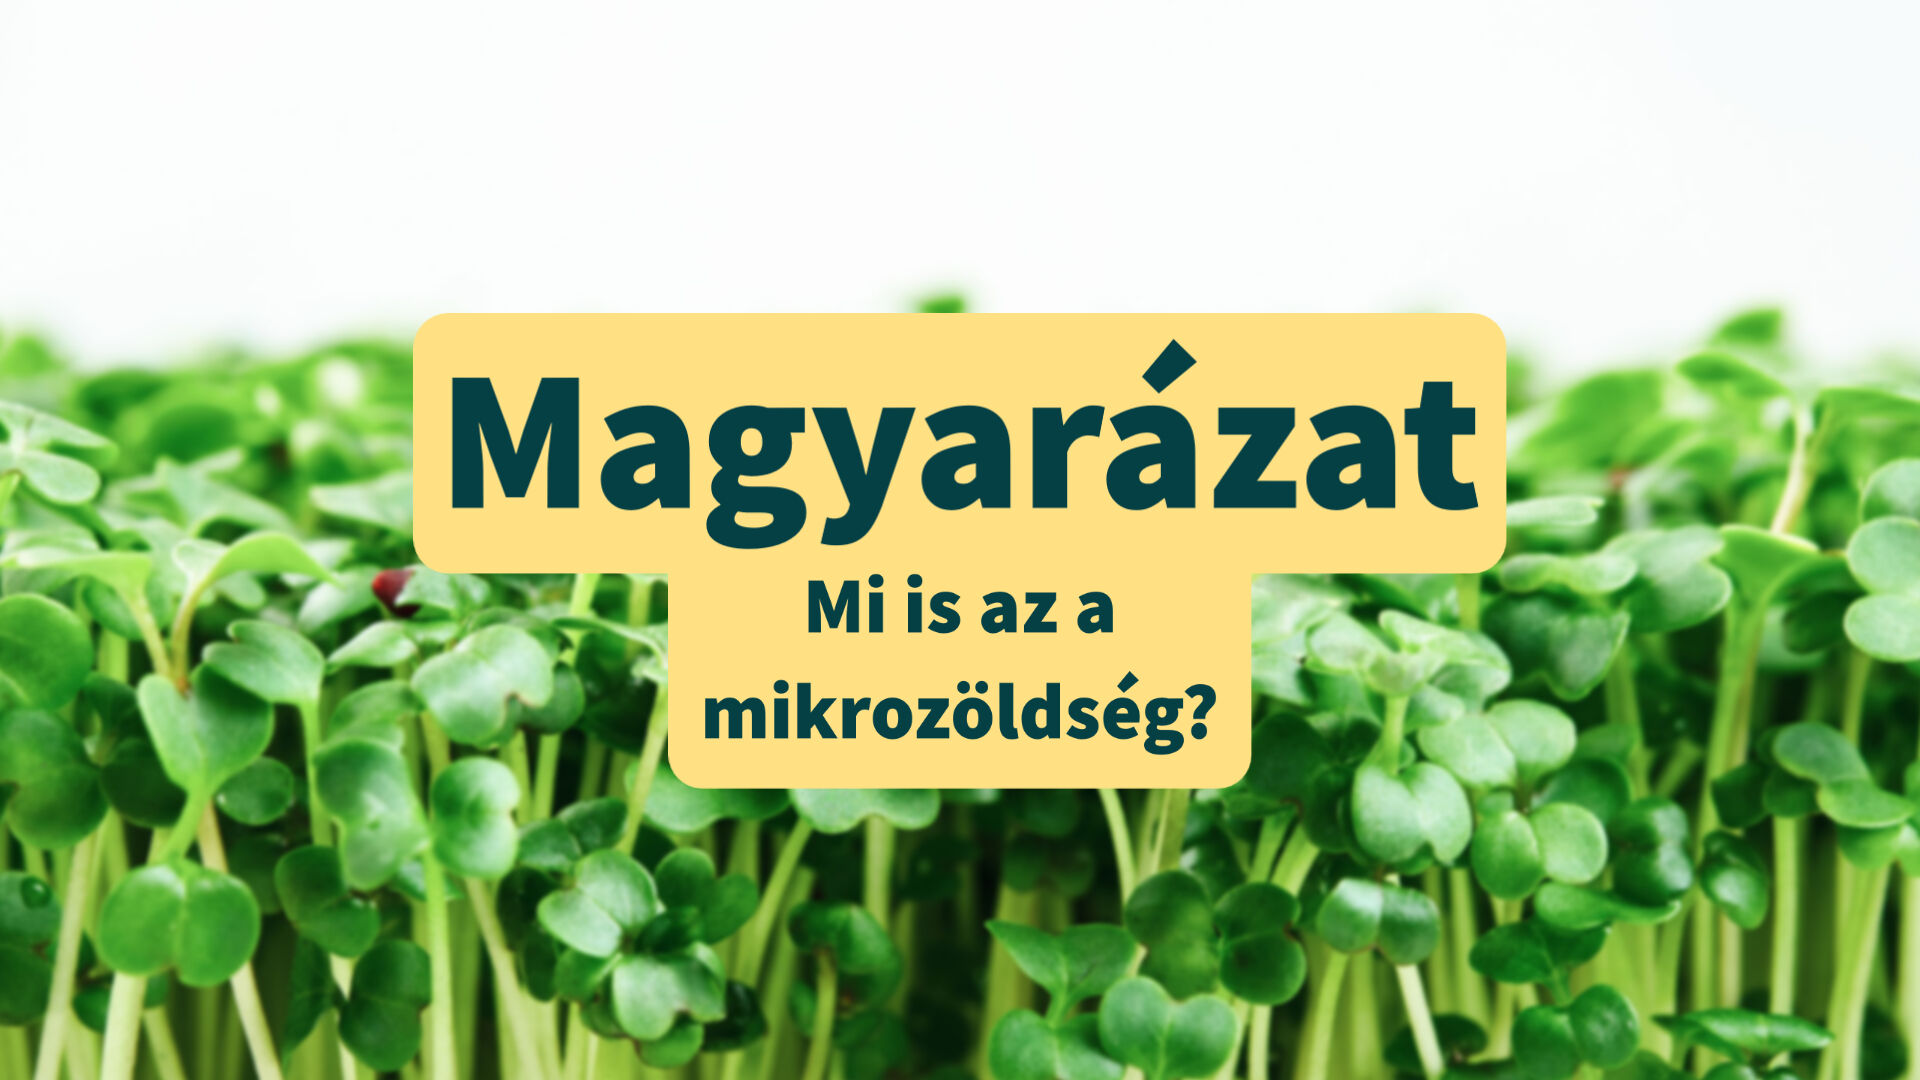 Mi a mikrozöldség?